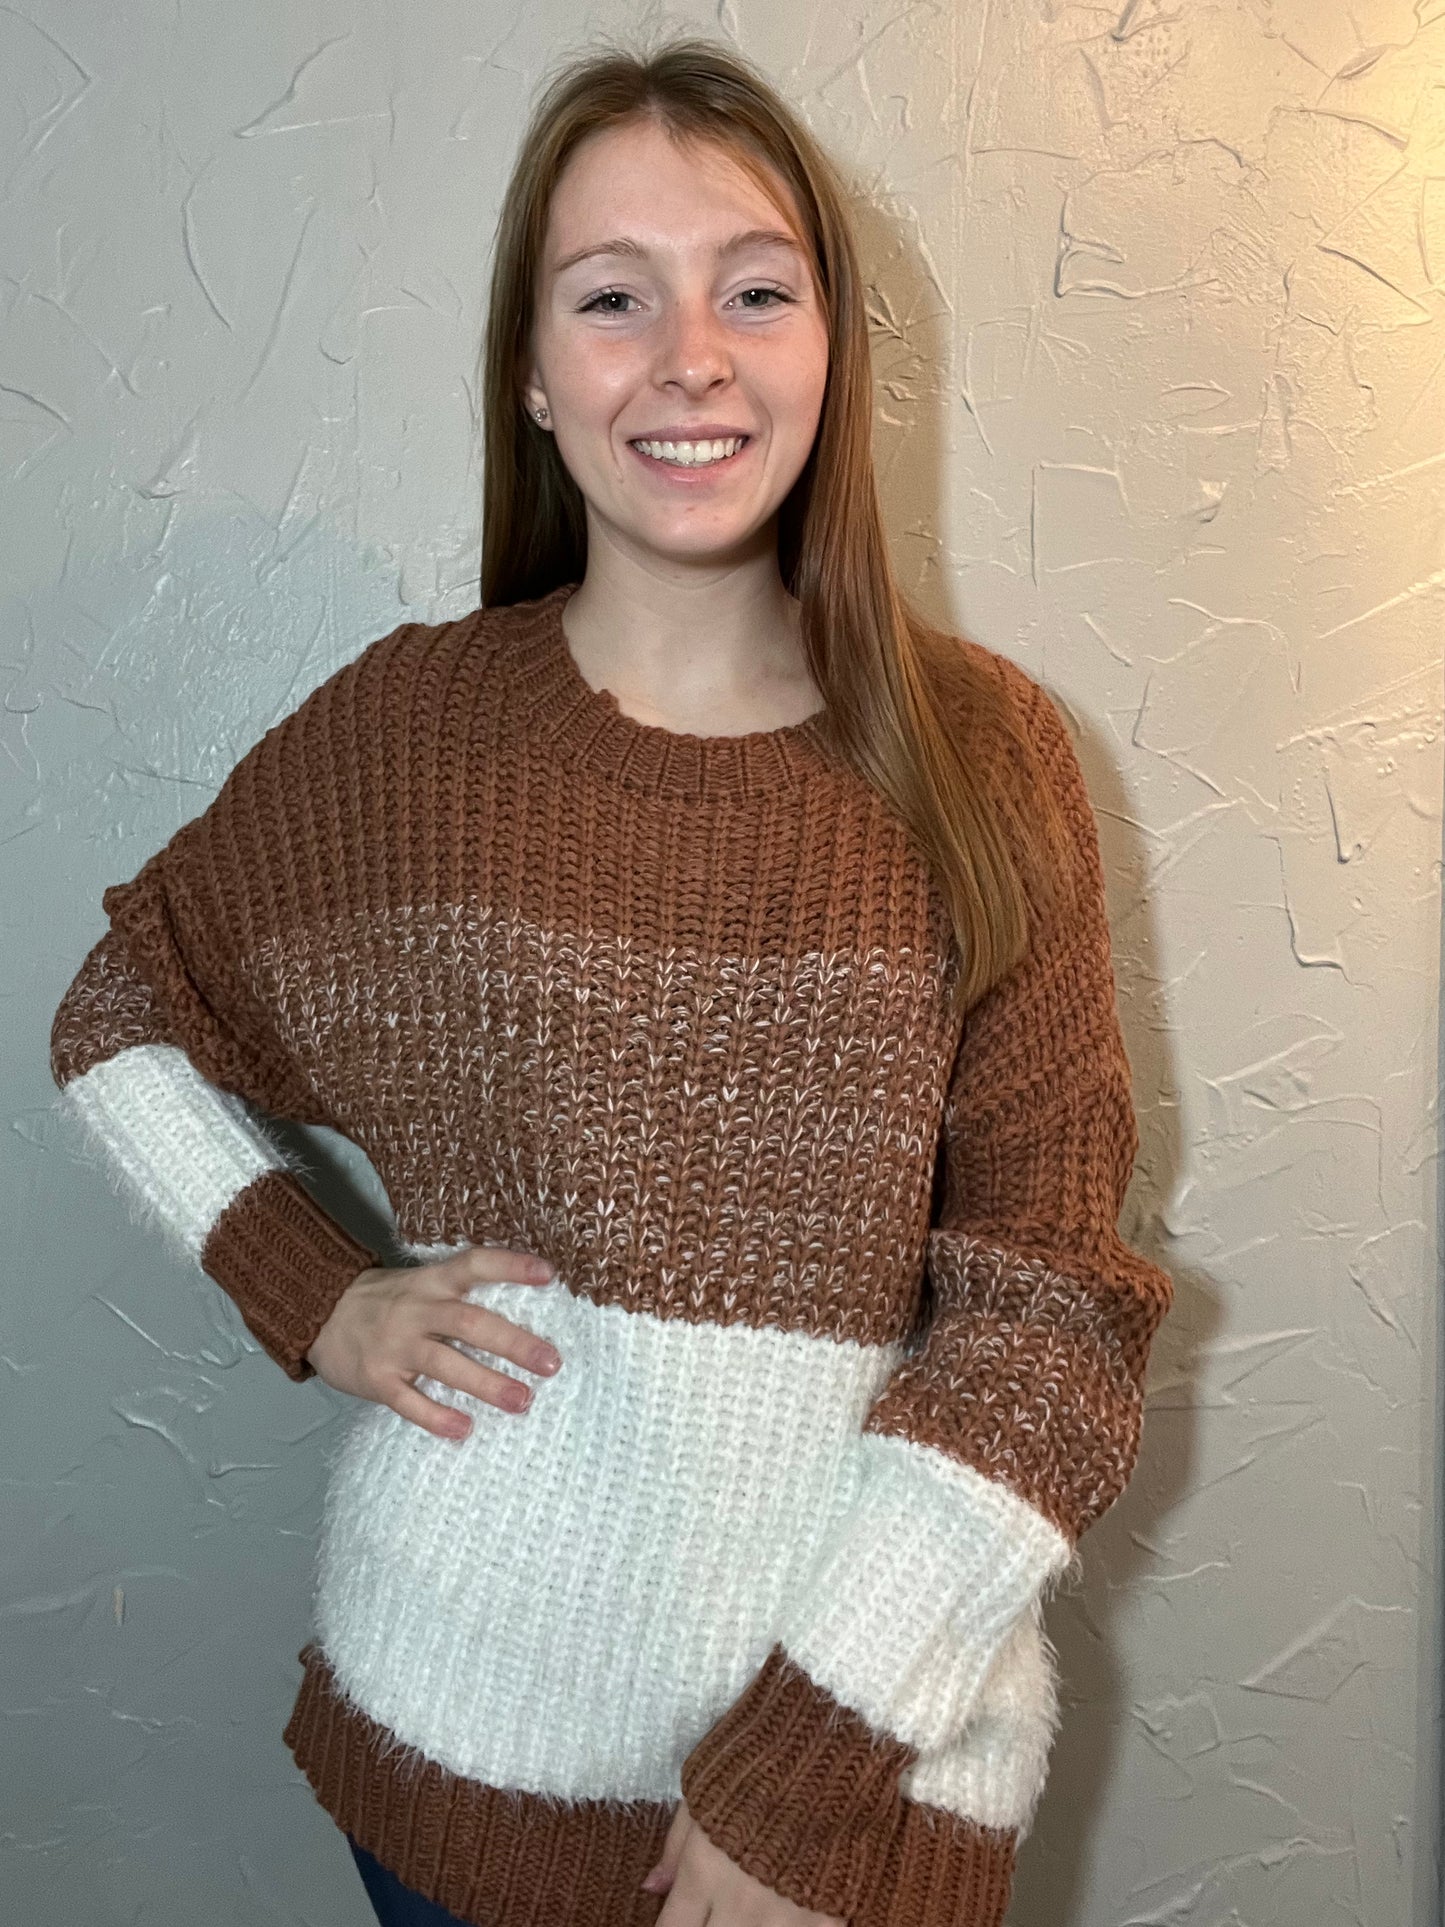 Fuzzy Striped Sweater